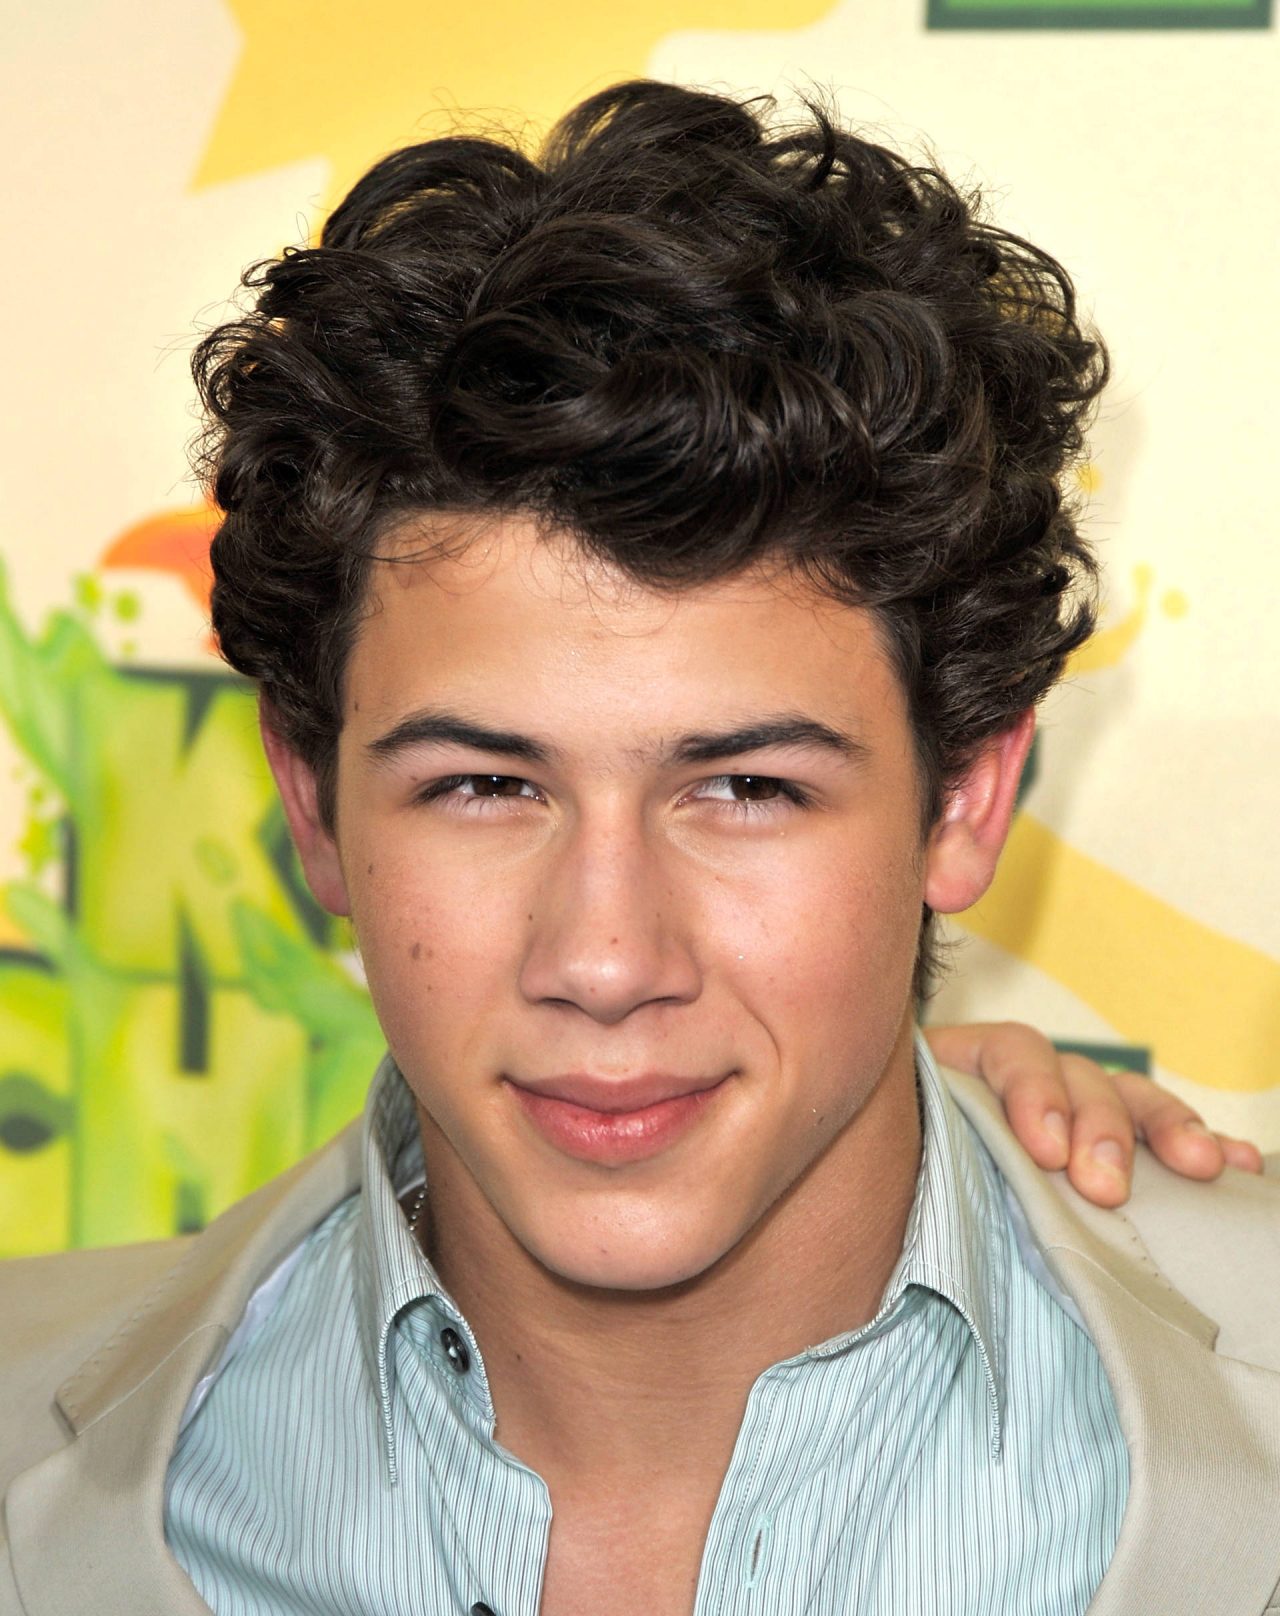 Nick Jonas curly hair